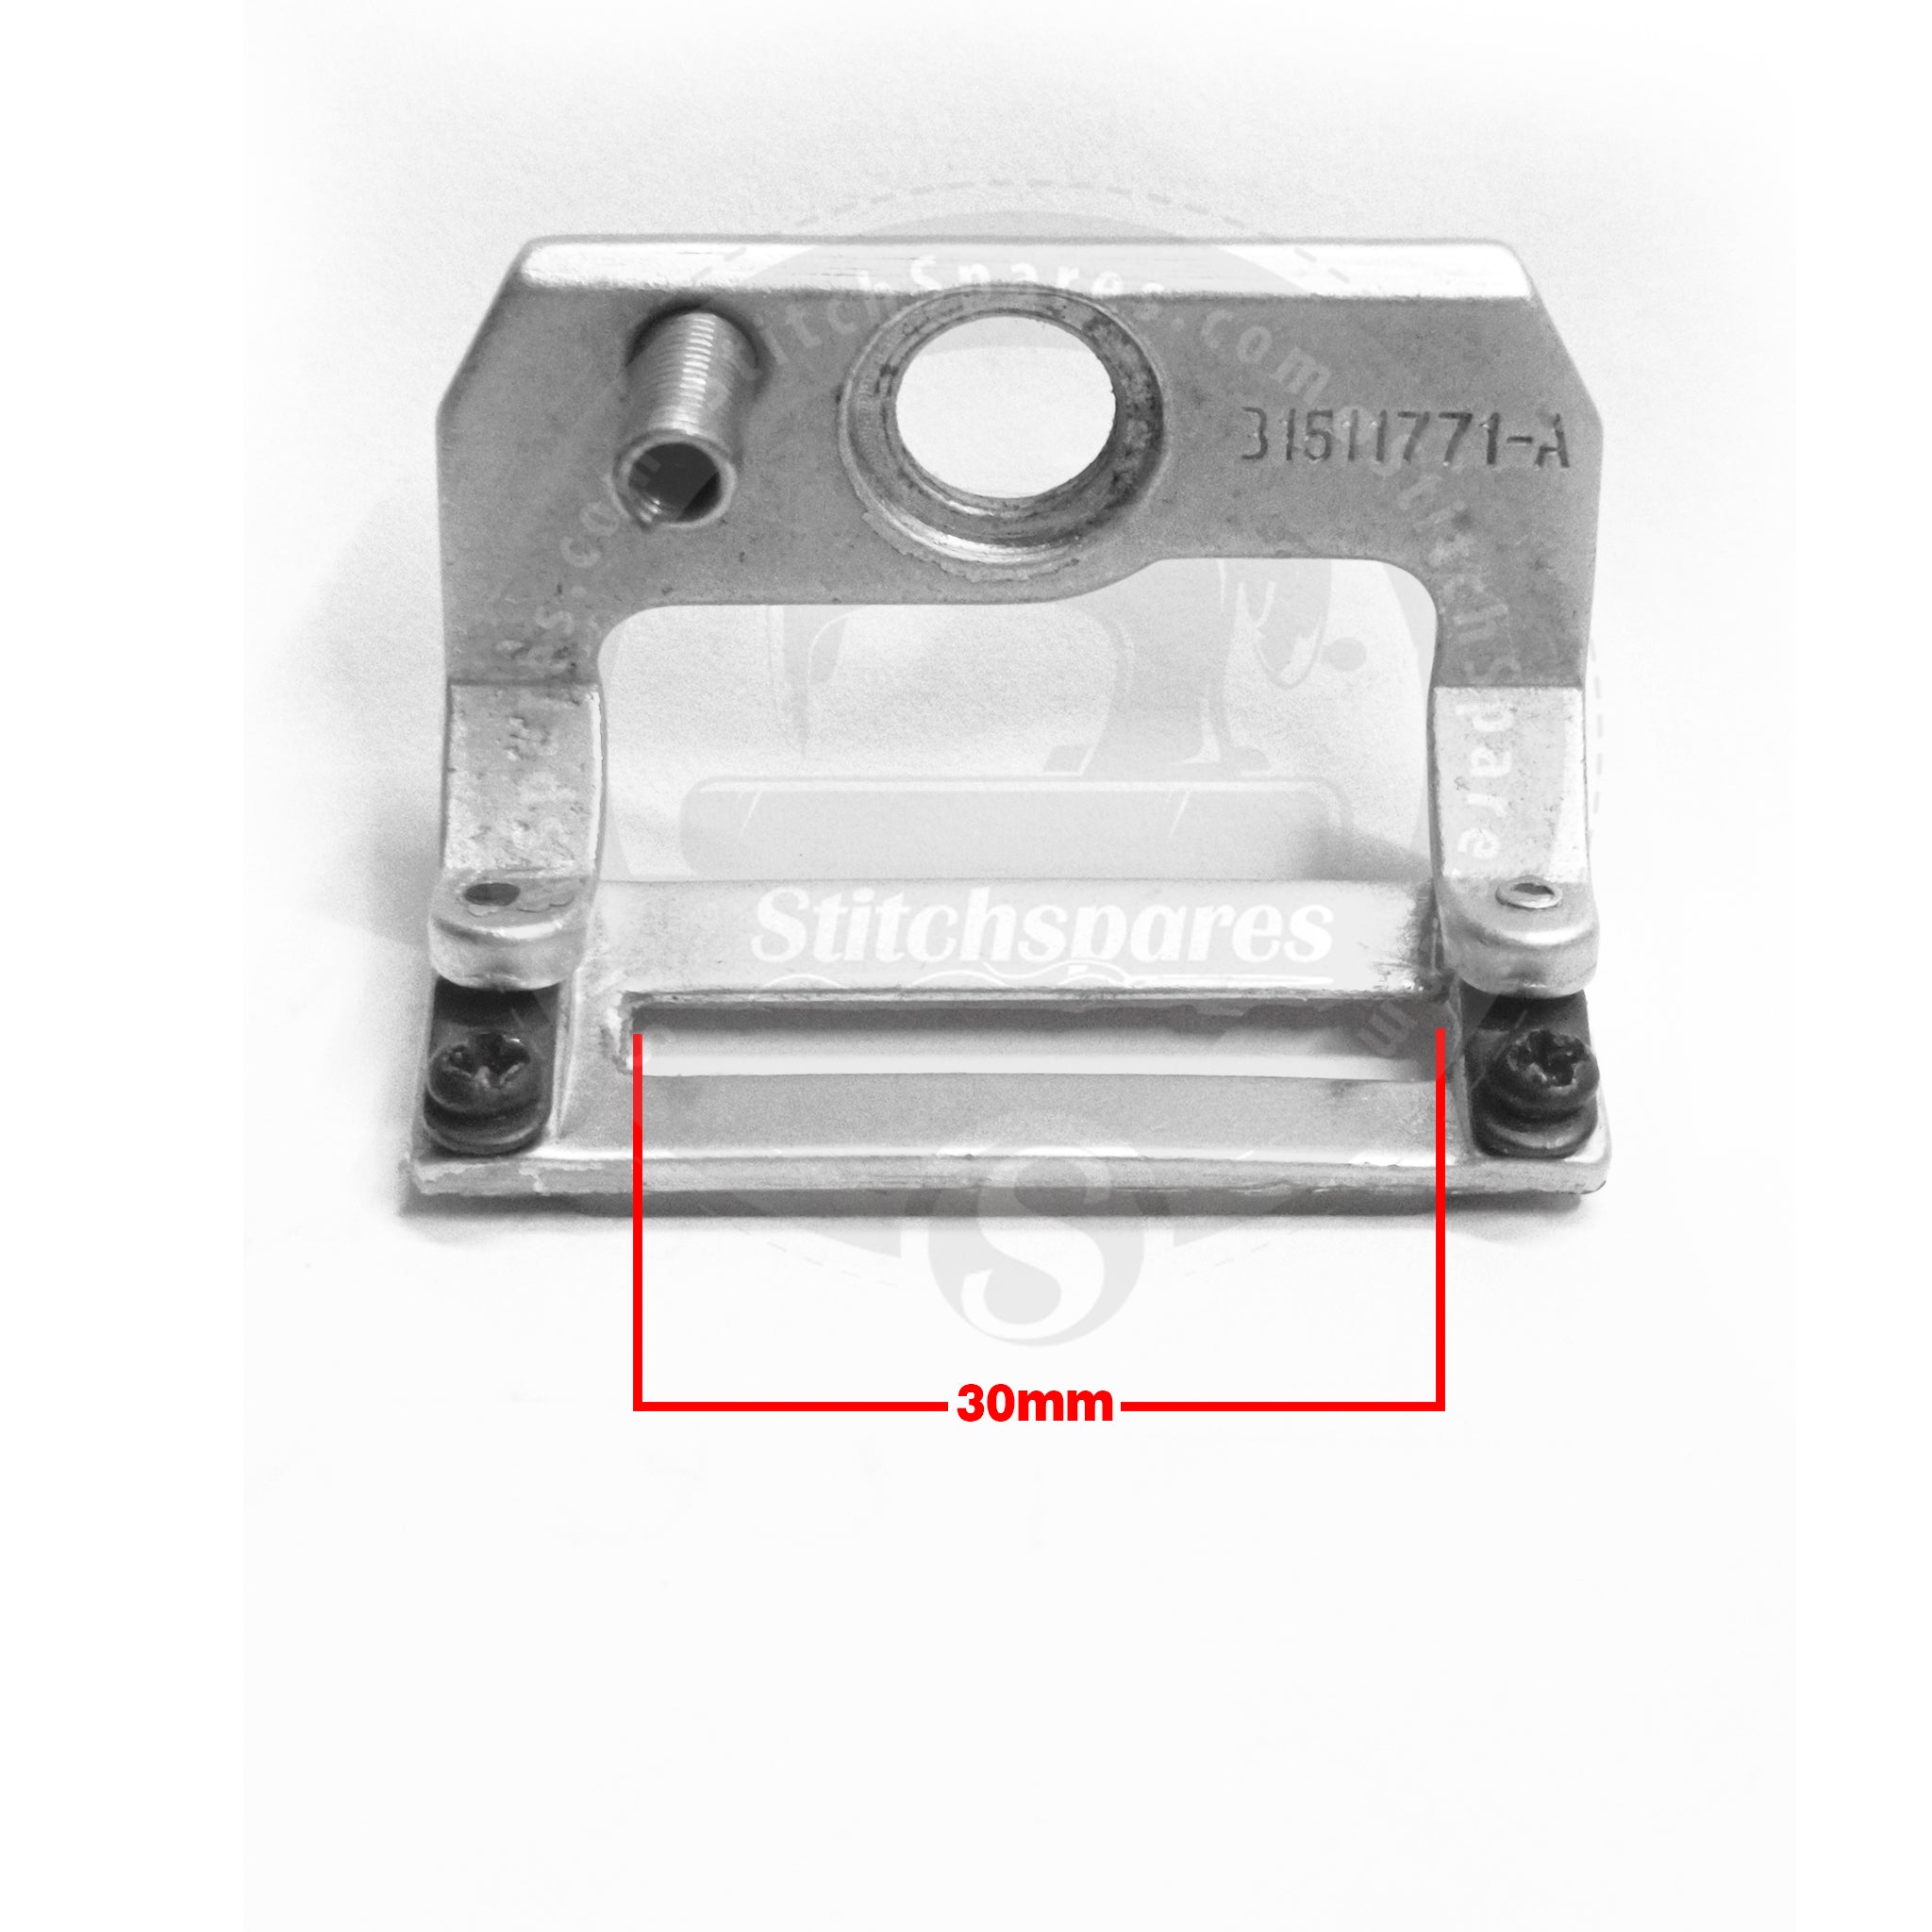 B1511-771-0A0 Prensatelas JUKI LBH-781 Pieza de repuesto para máquina de coser con ojales